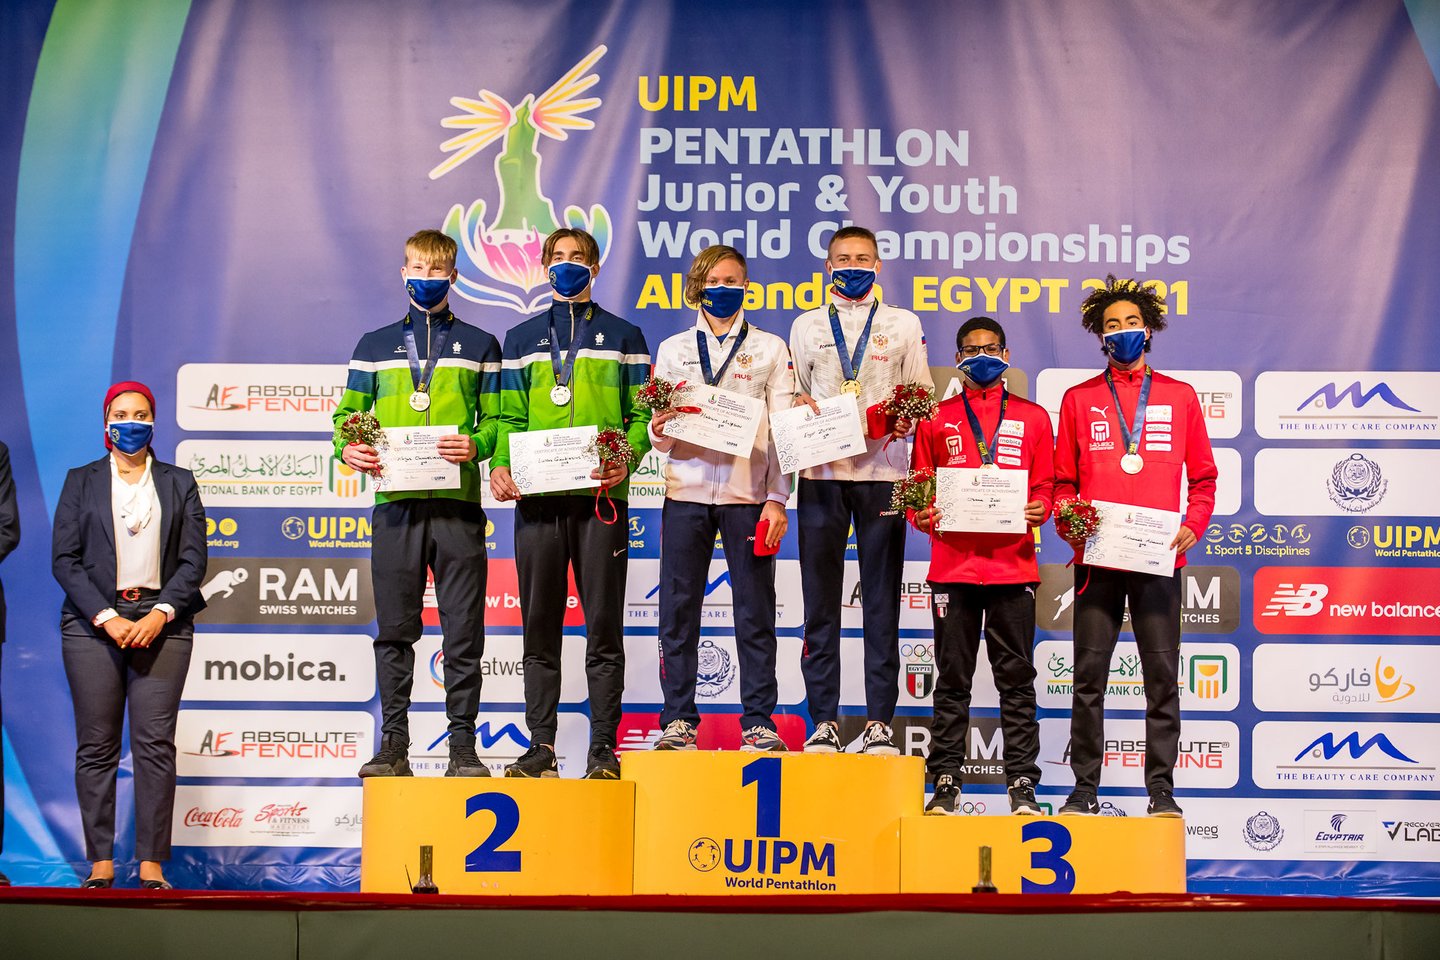 Estafetėse Nojus Chmieliauskas ir Lukas Gaudiešius iškovojo sidabrą<br>UIPM / Filip Komorous nuotr.